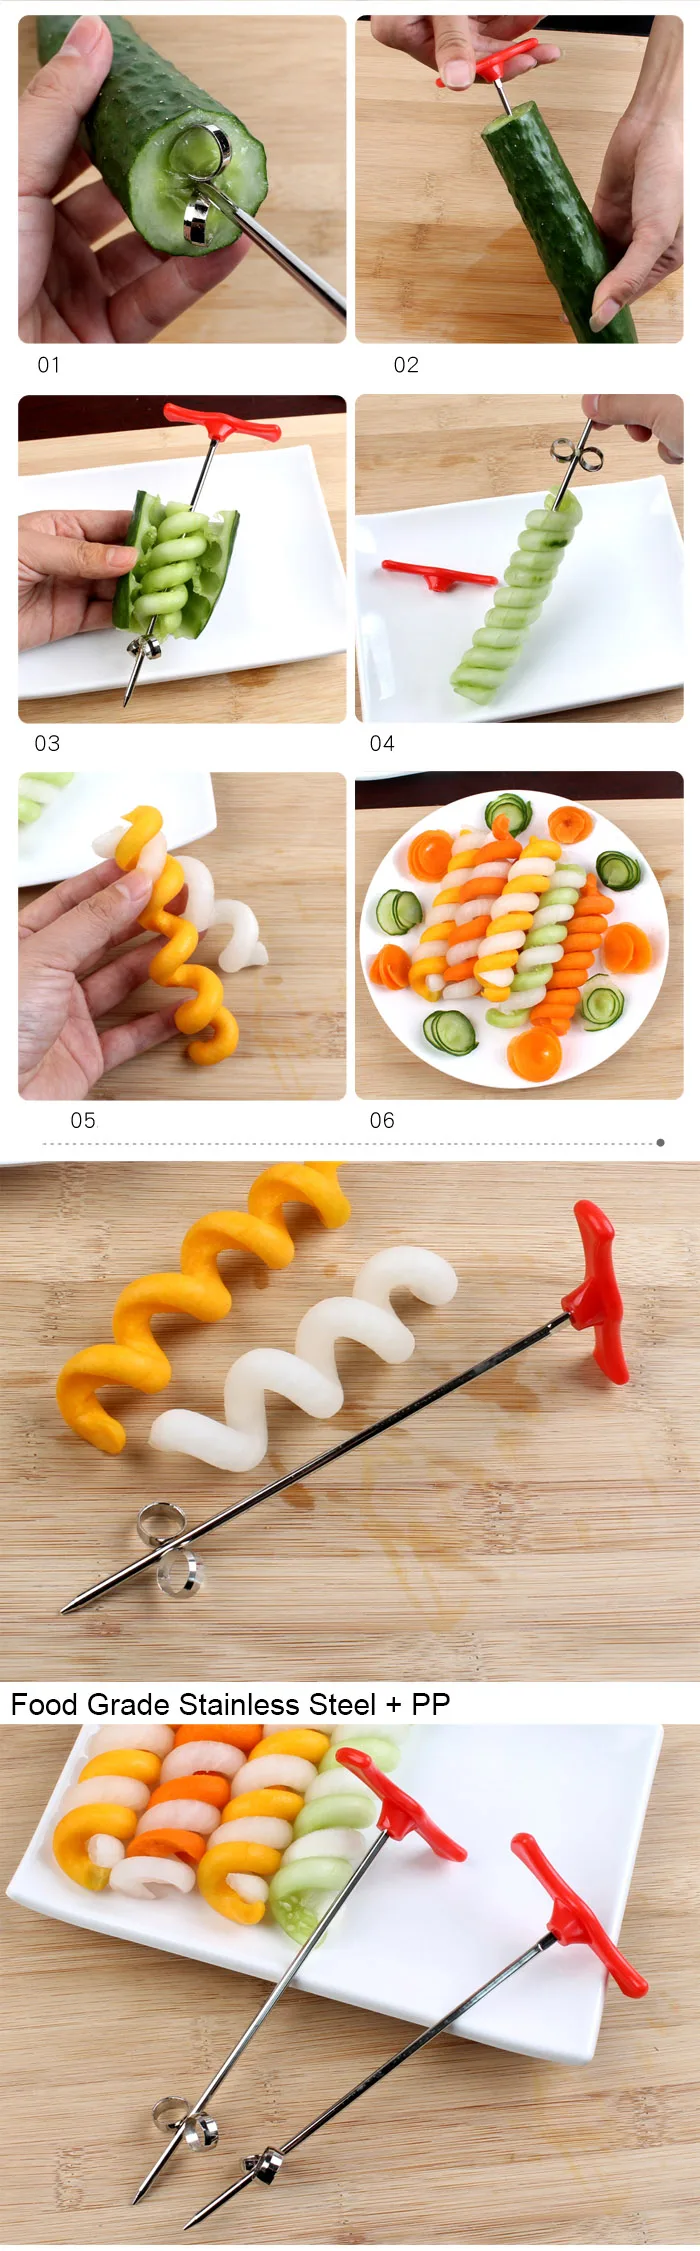 Овощной спиральный нож резной инструмент картофель Морковь Огурец салат измельчитель ручной спиральный винтовой стержень для нарезки резак спирализатор